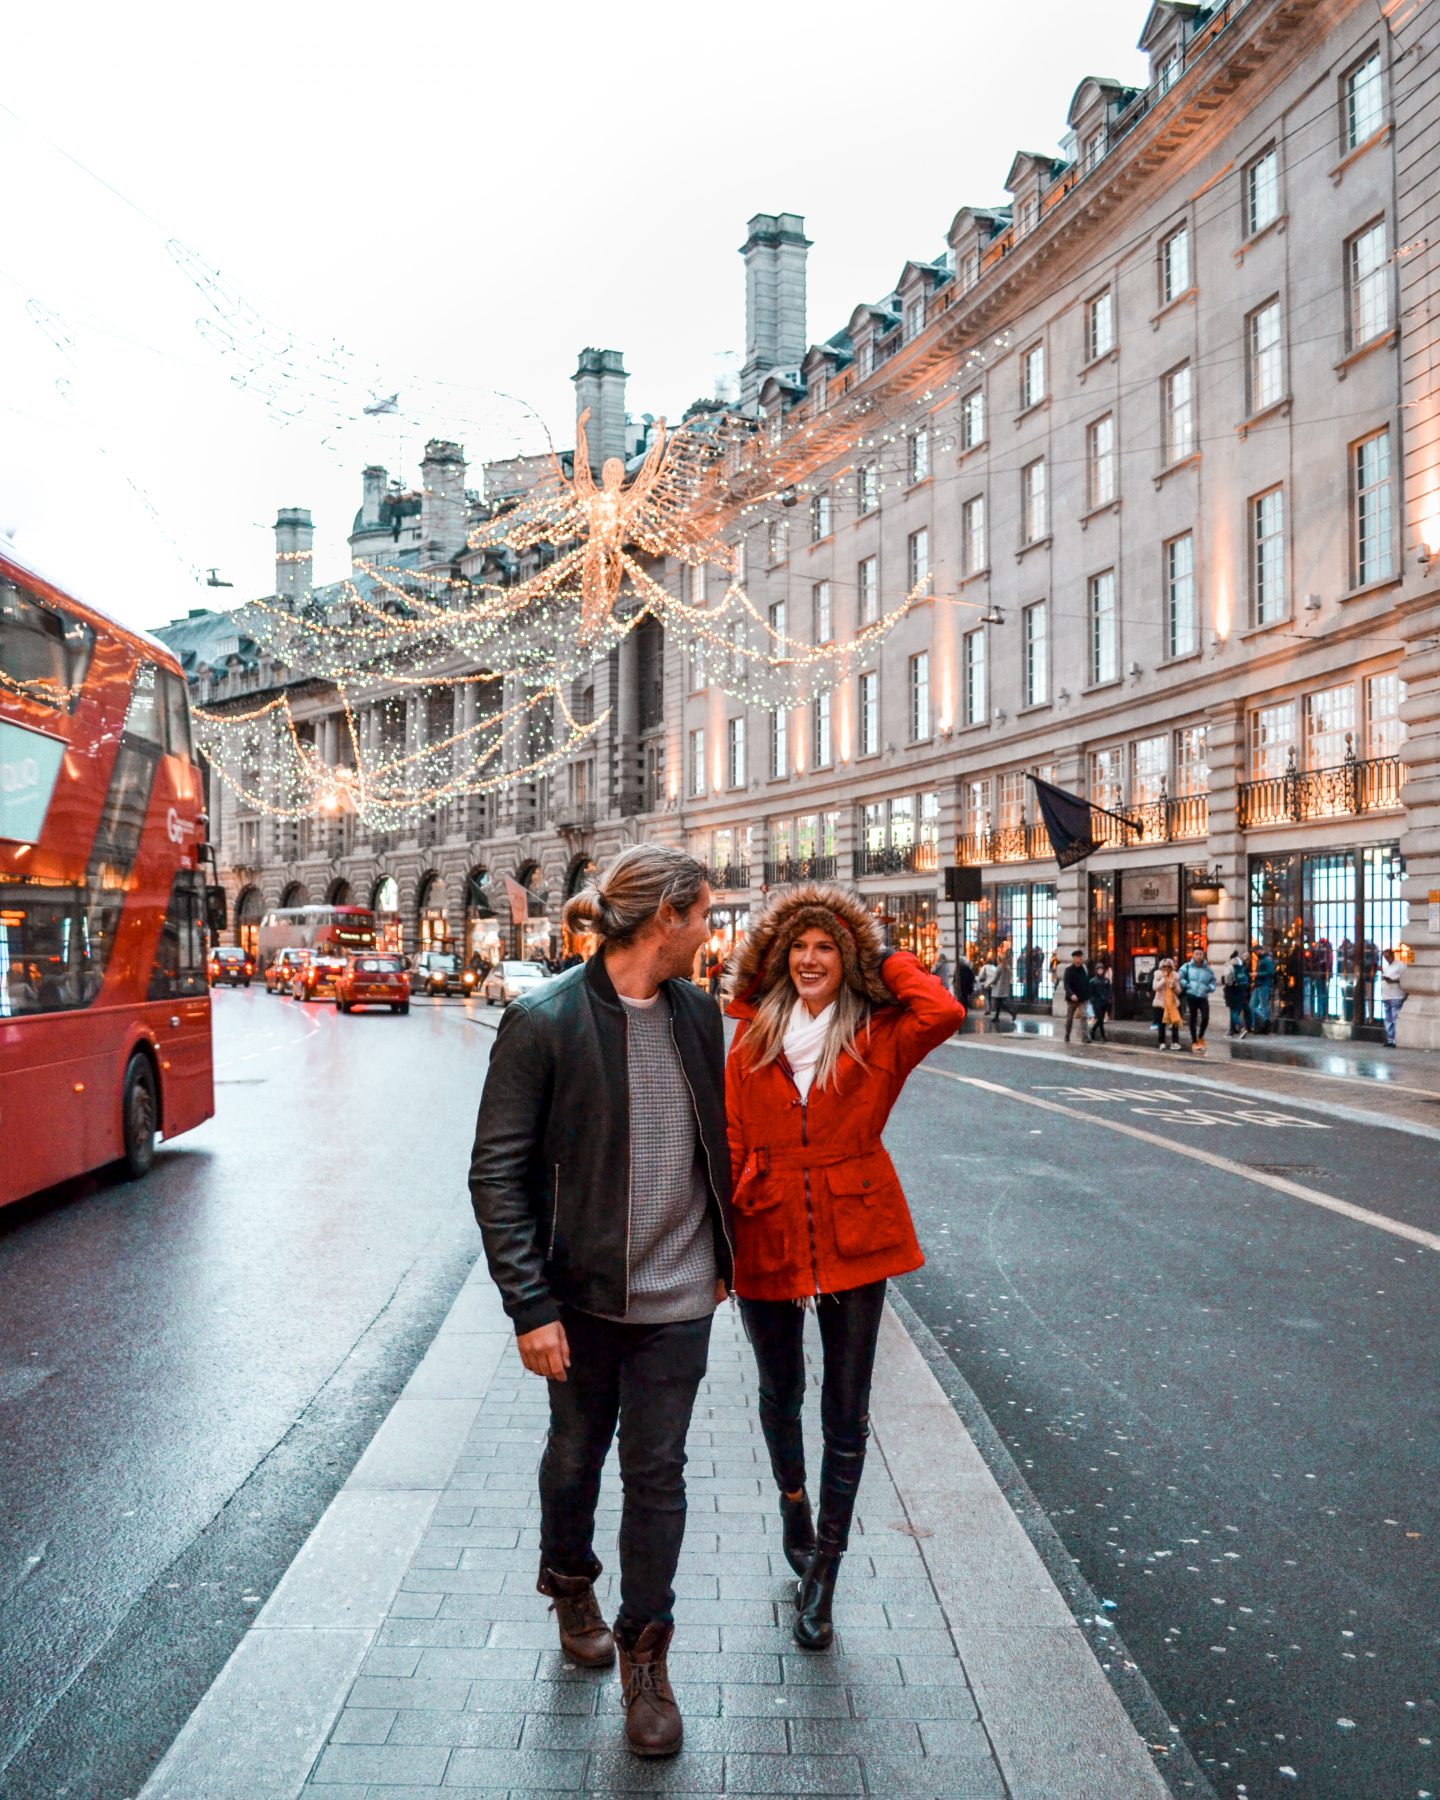 Instagrammable Christmas Spots In London - regent street